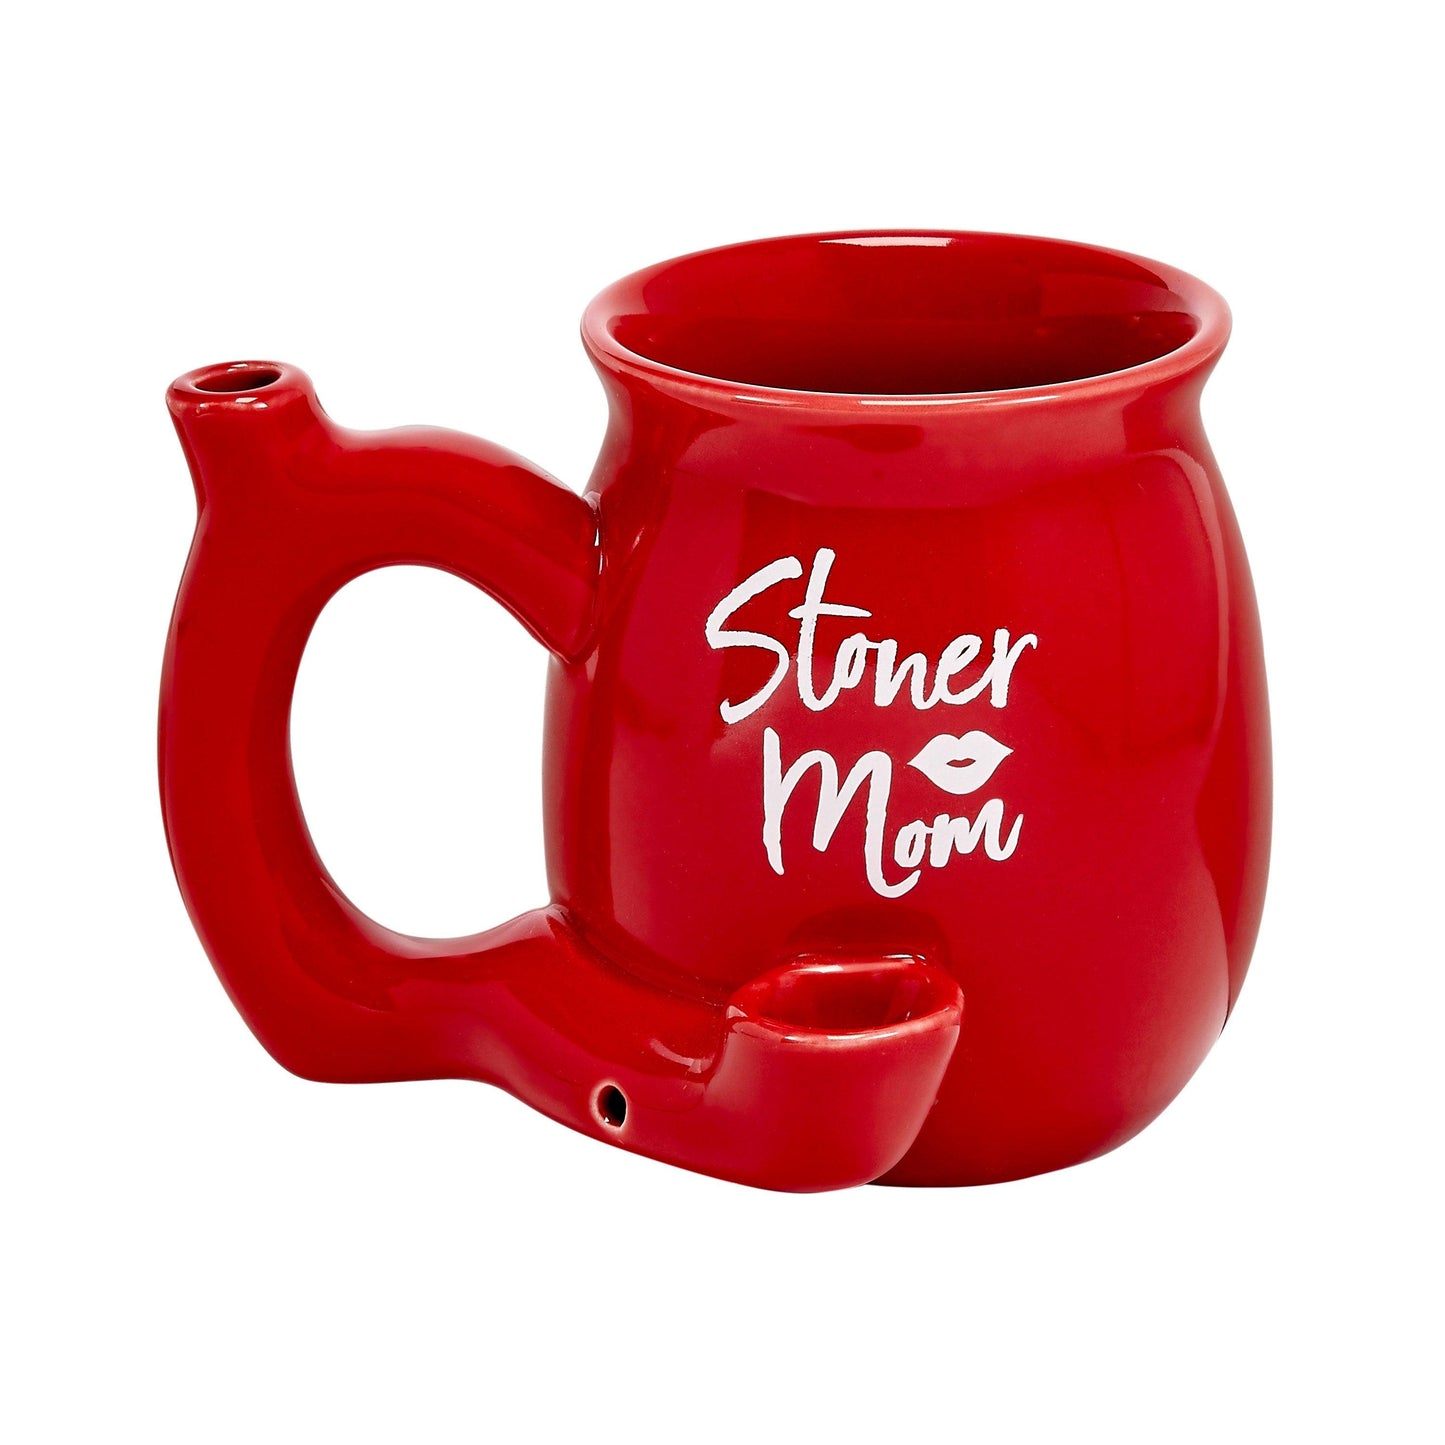 Stoner Mom Mug - Red With White Logo - My Sex Toy Hub